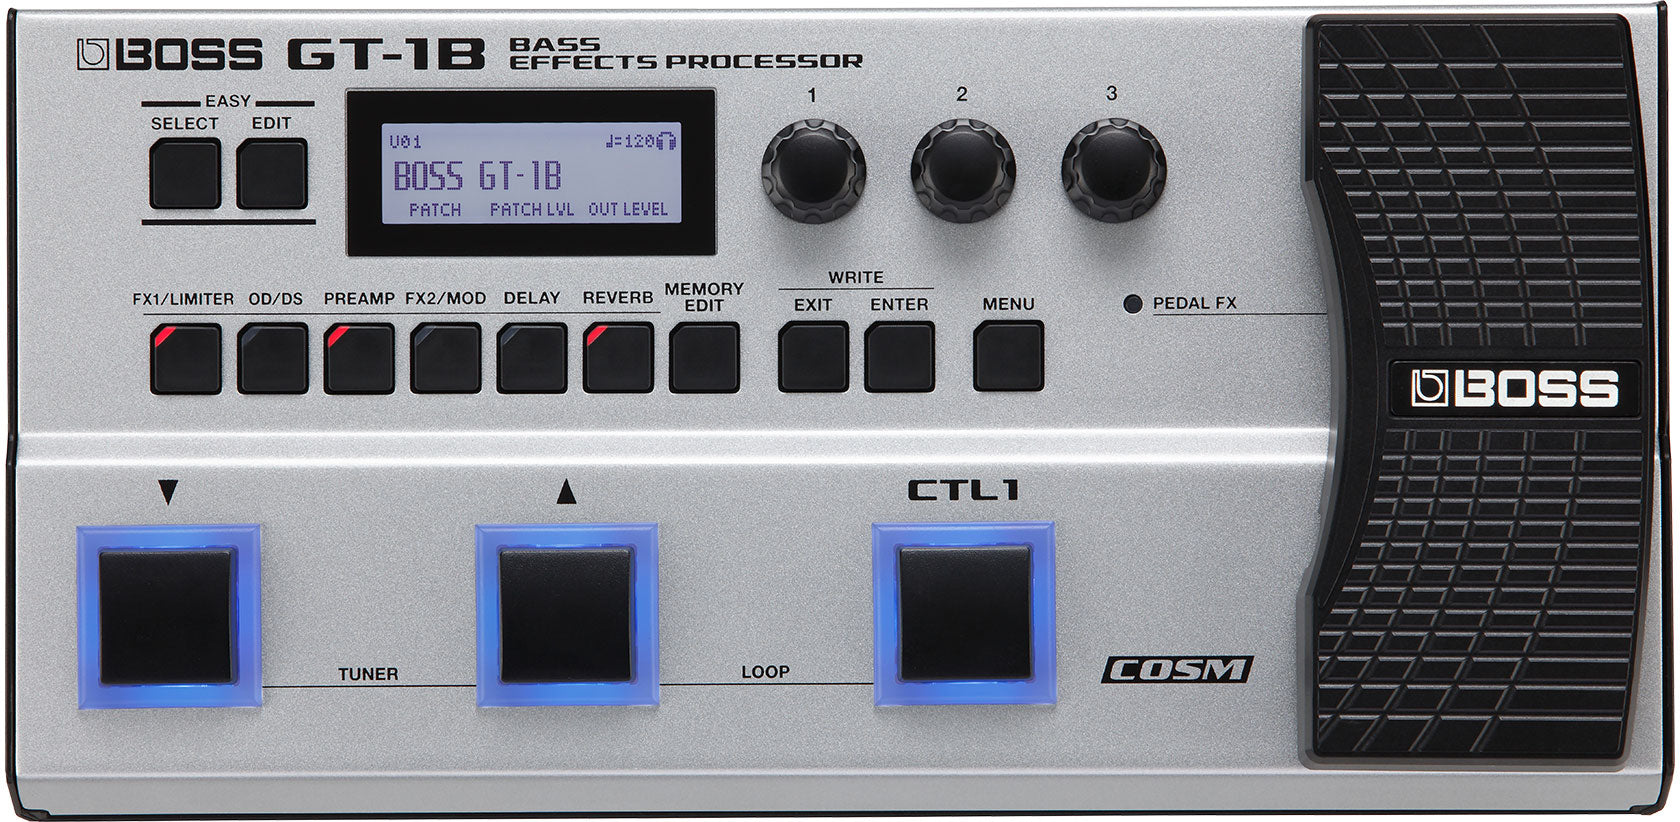 BOSS GT-1B Bass Effects Processor 低音結他效果器